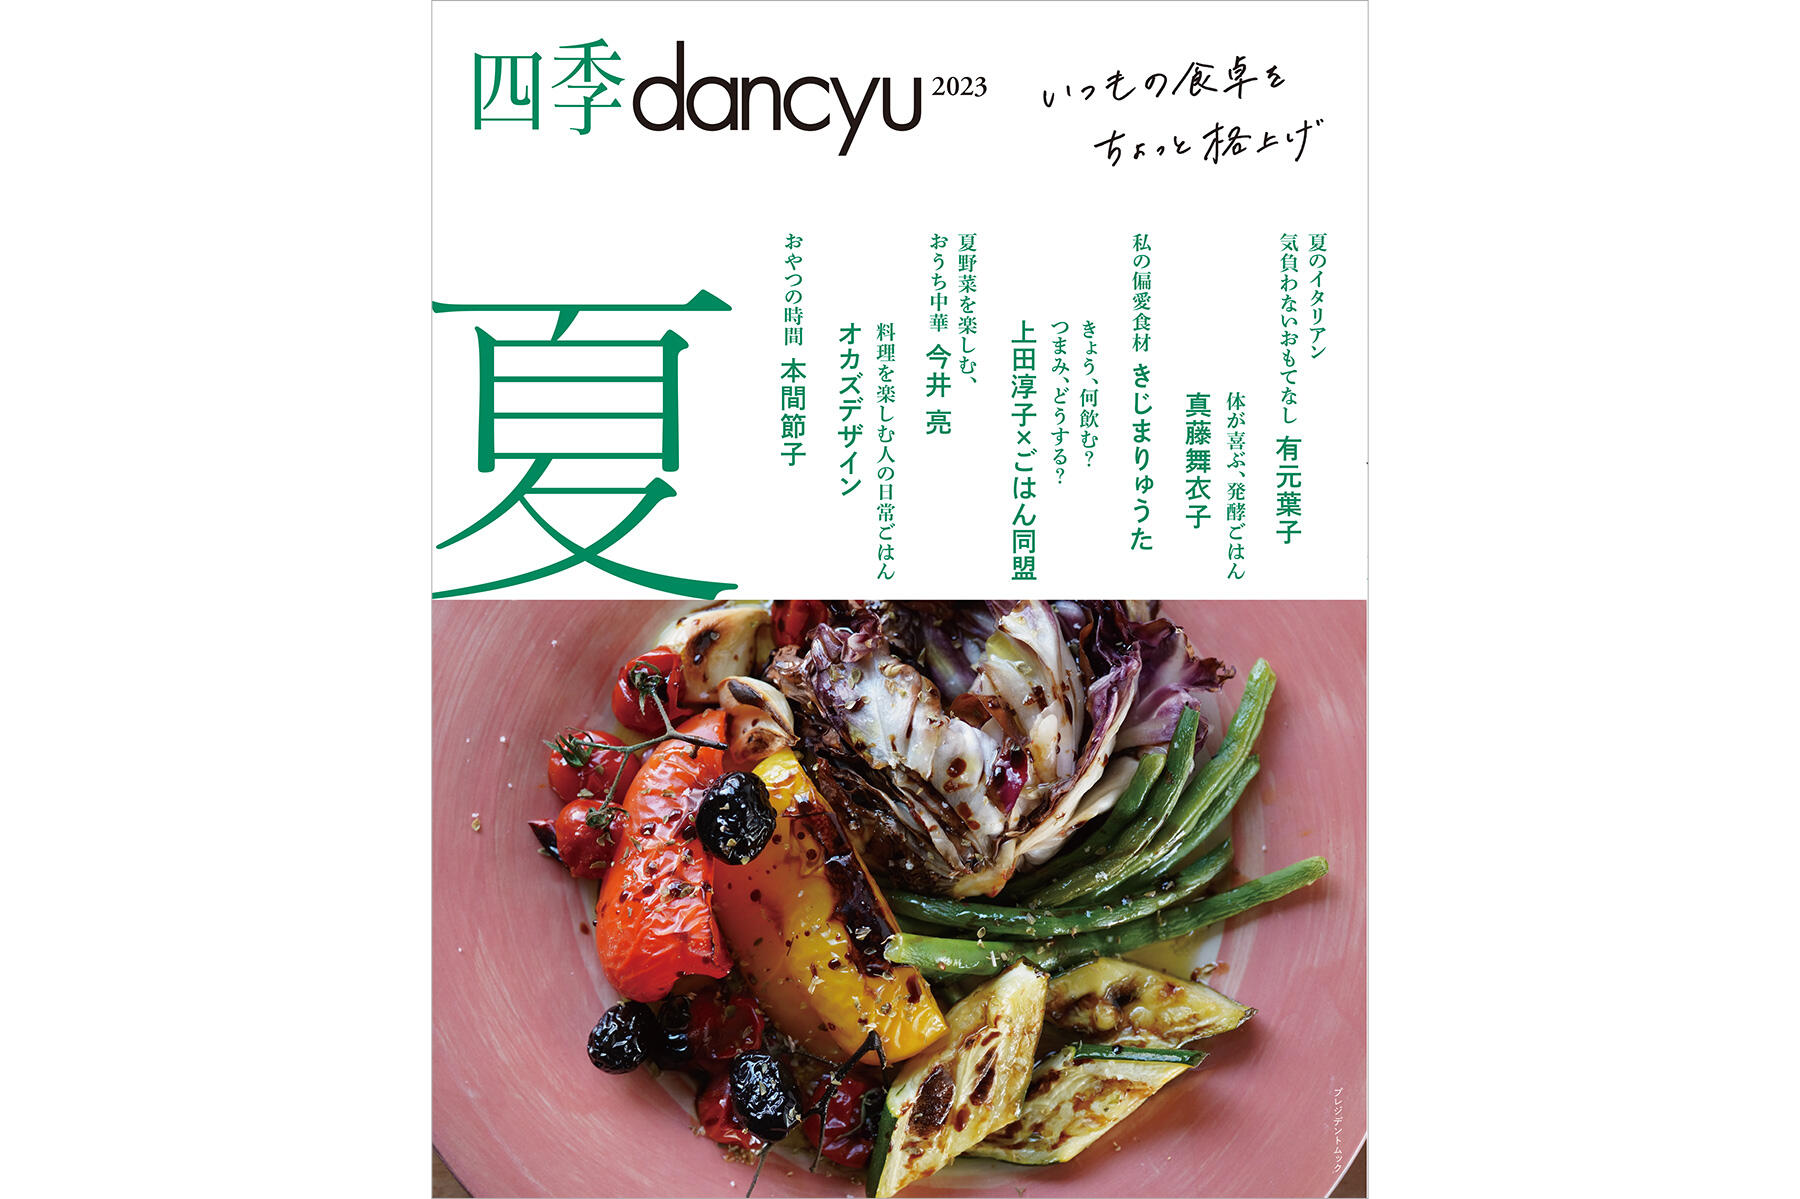 今号からリニューアル！眺めておいしい、つくっておいしいレシピ本「四季dancyu2023夏」本日発売です | dancyuムックから | 【公式】 dancyu (ダンチュウ)